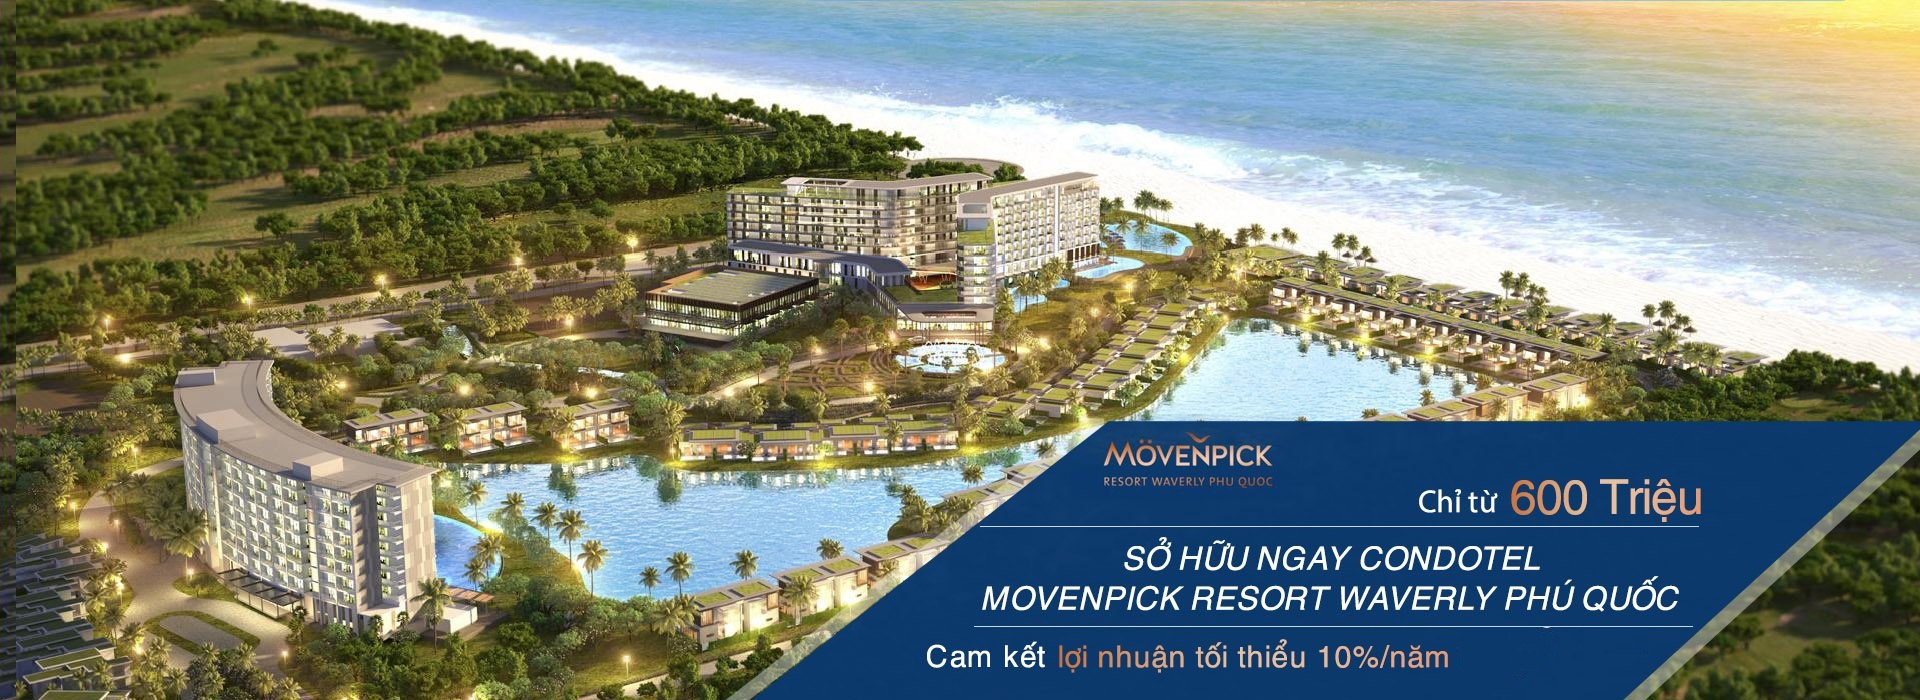 Chính sách bán hàng Movenpick Resort Waverly Phú Quốc 1